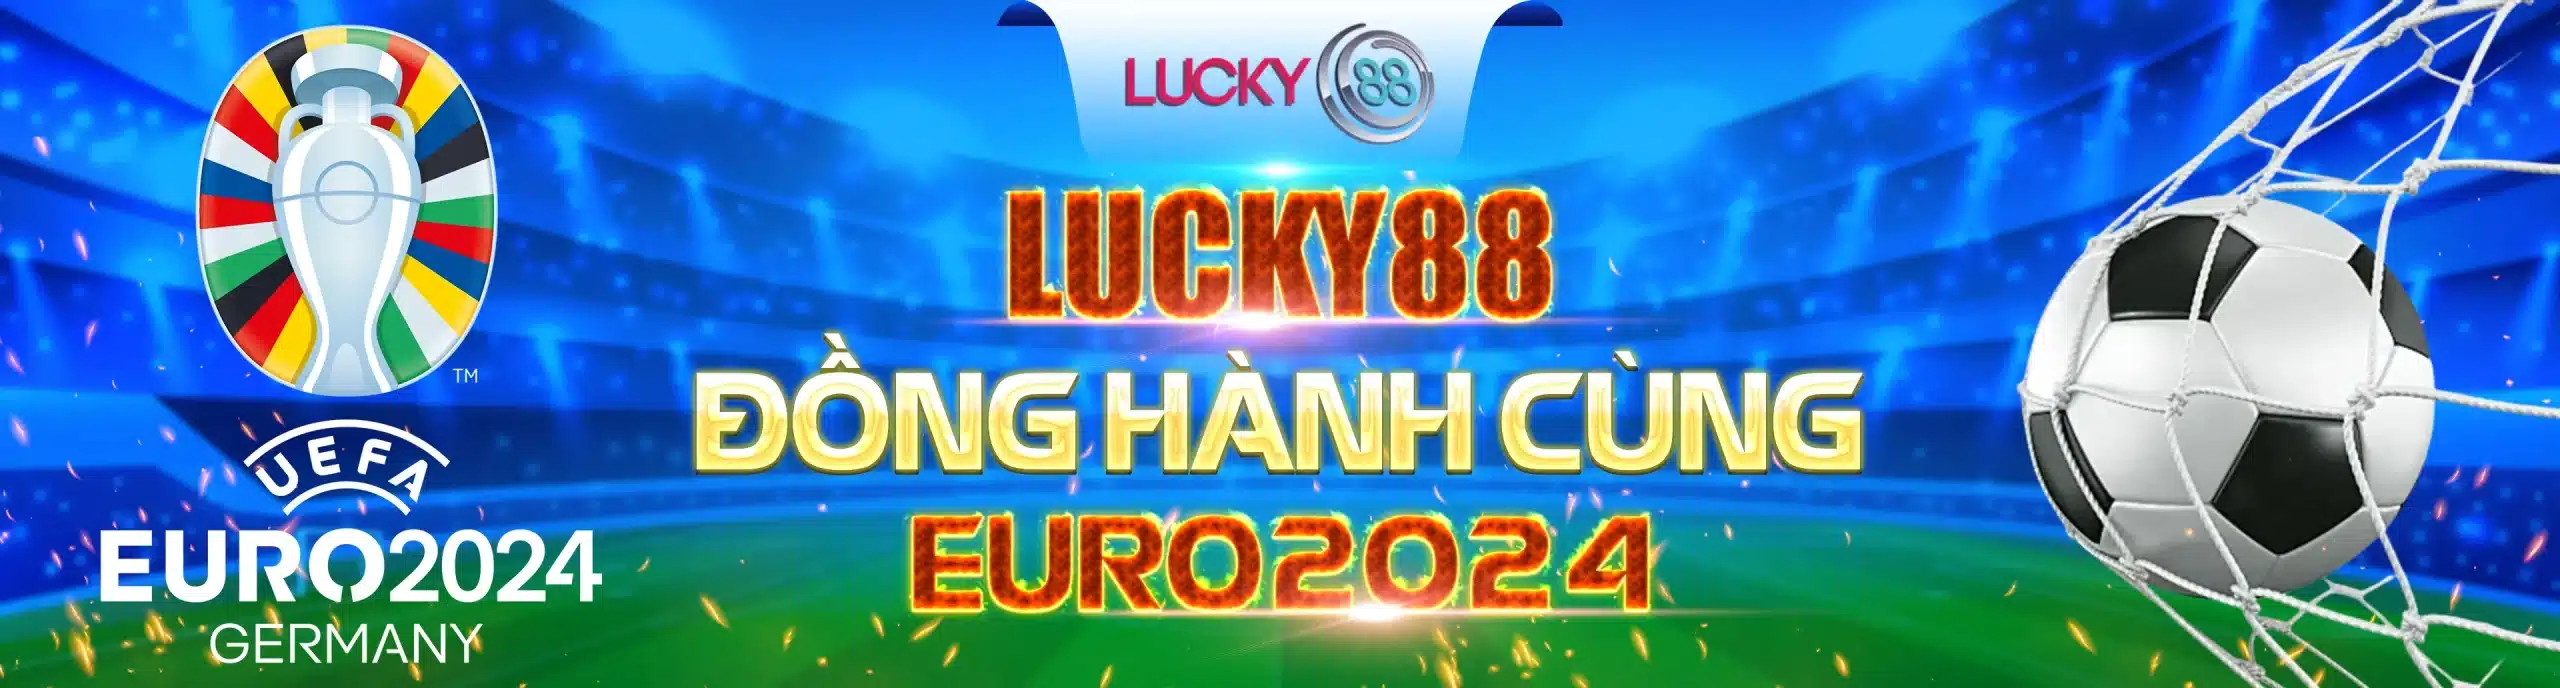 banner Lucky 88- đồng hành cùng Euro 2024